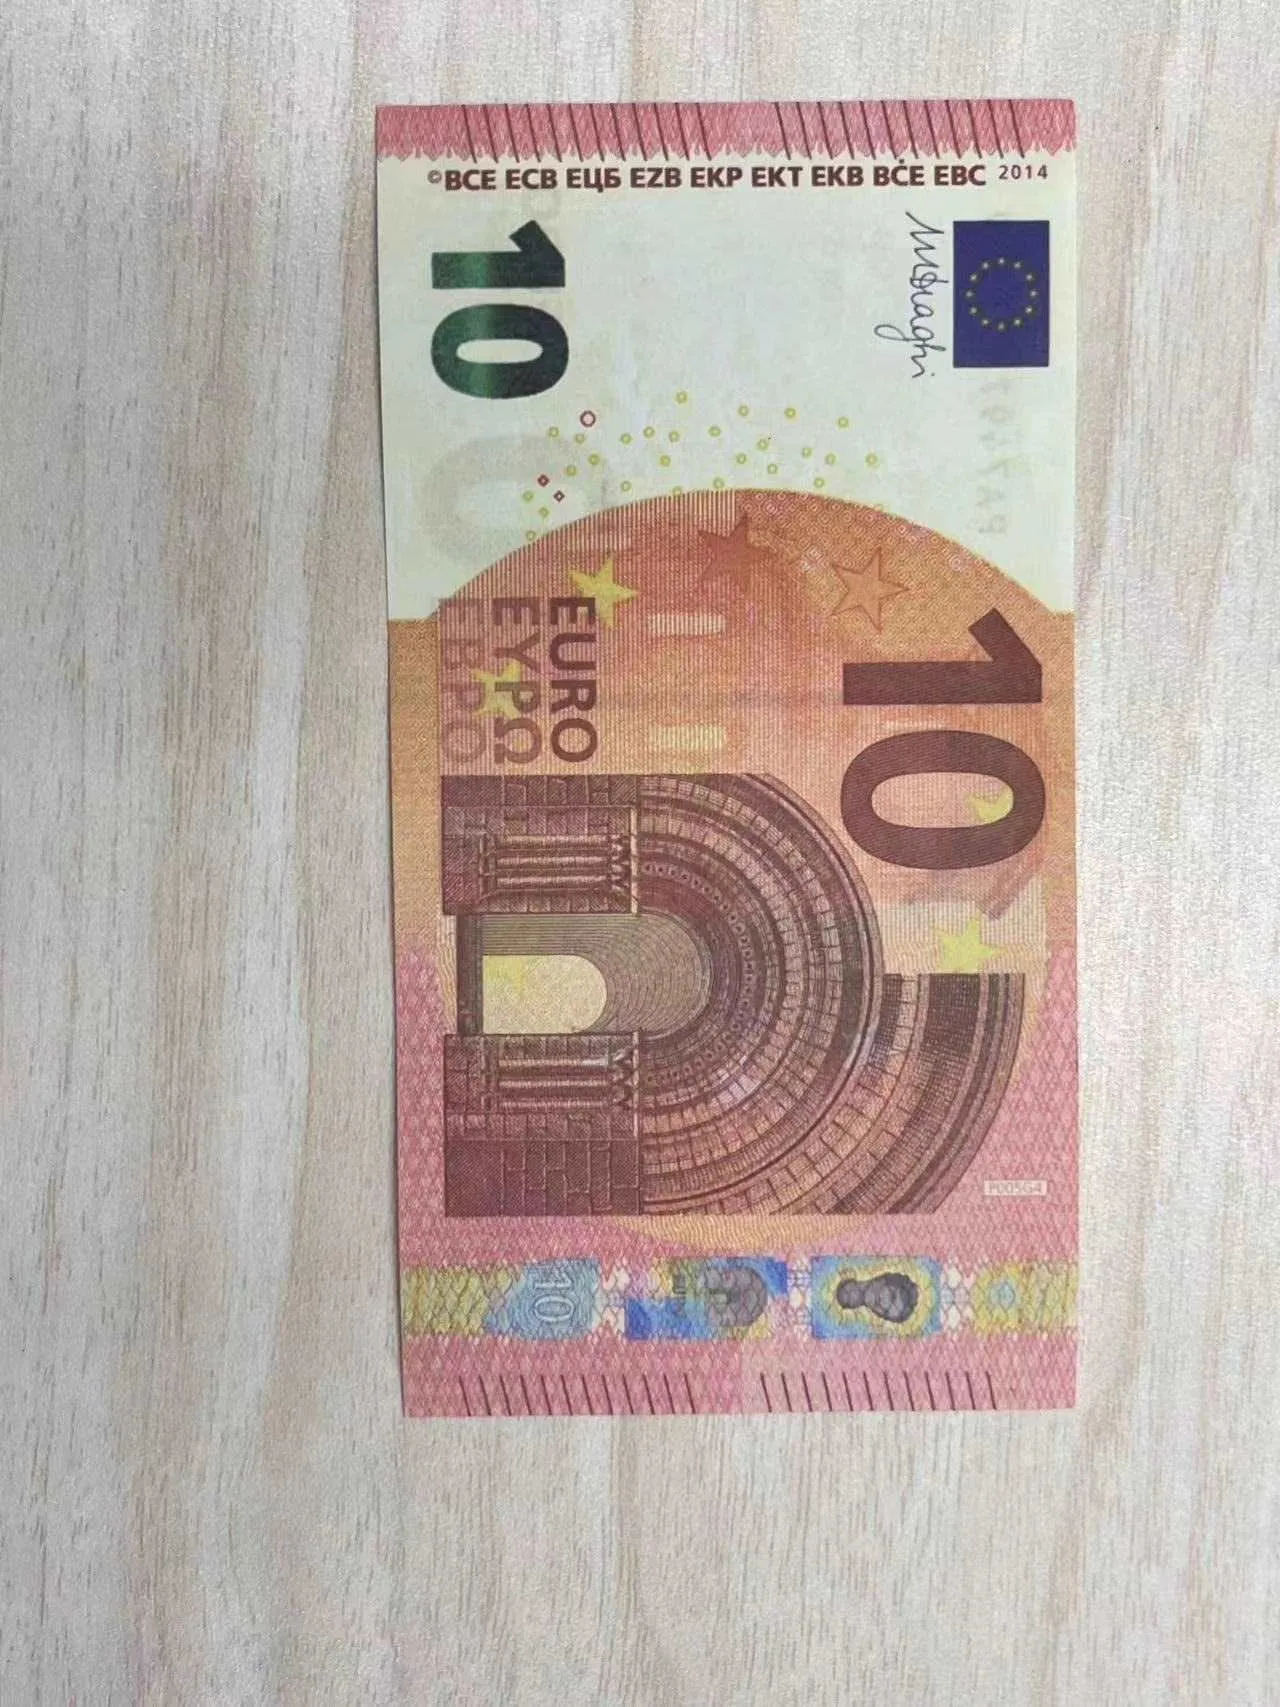 Geld kopiëren Werkelijk 1:2 formaat herdenkingsbankbiljet Ontwerpmodel Prototype simuleert de valuta van coupon rekwisieten A Qfeah